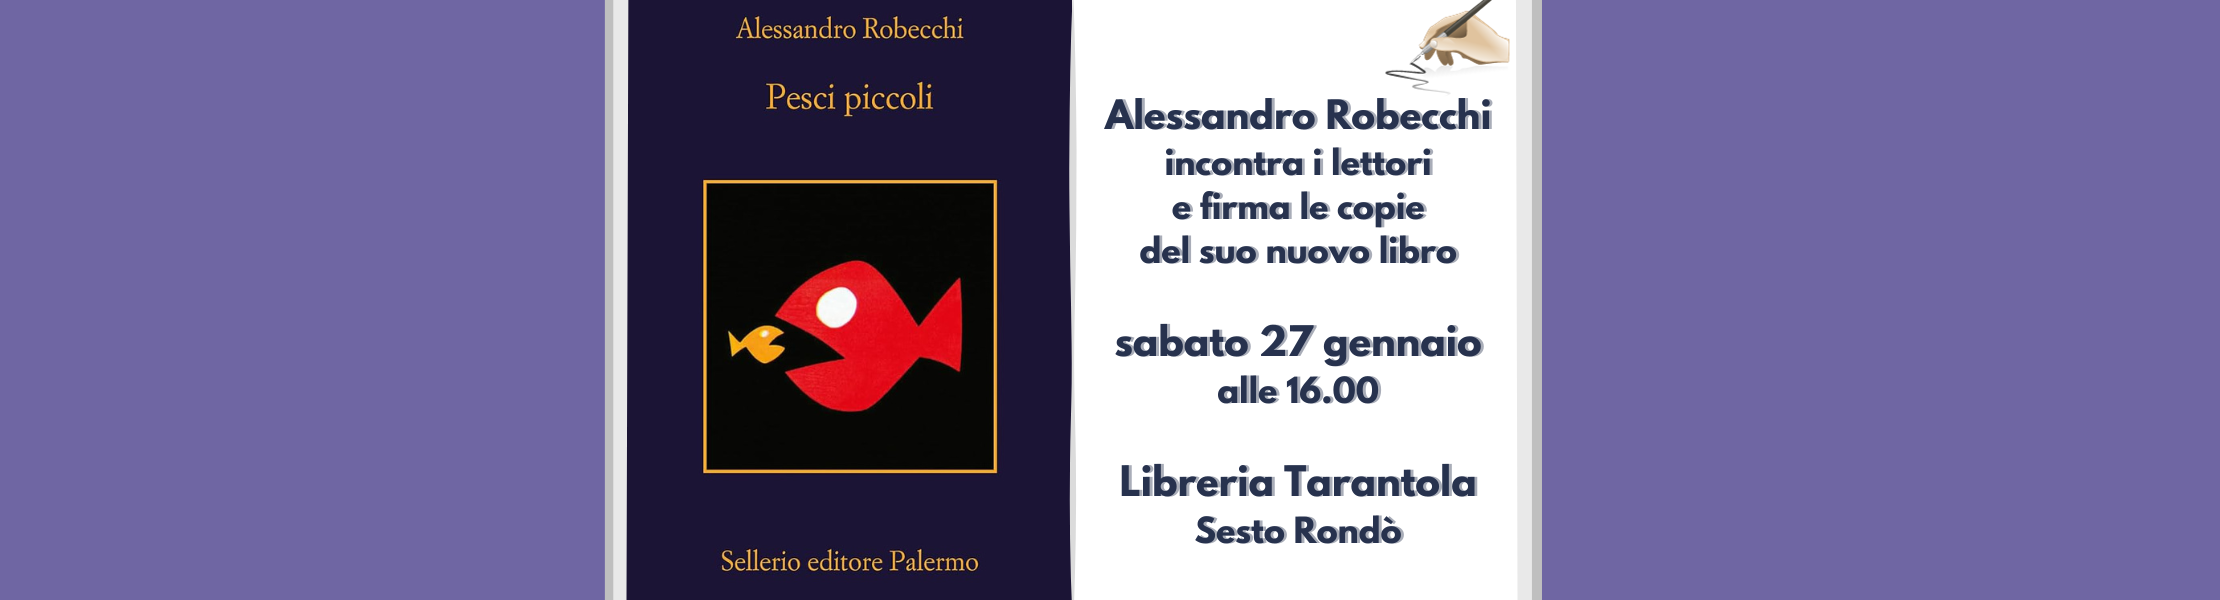 Alessandro Robecchi incontra i lettori alla libreria Tarantola